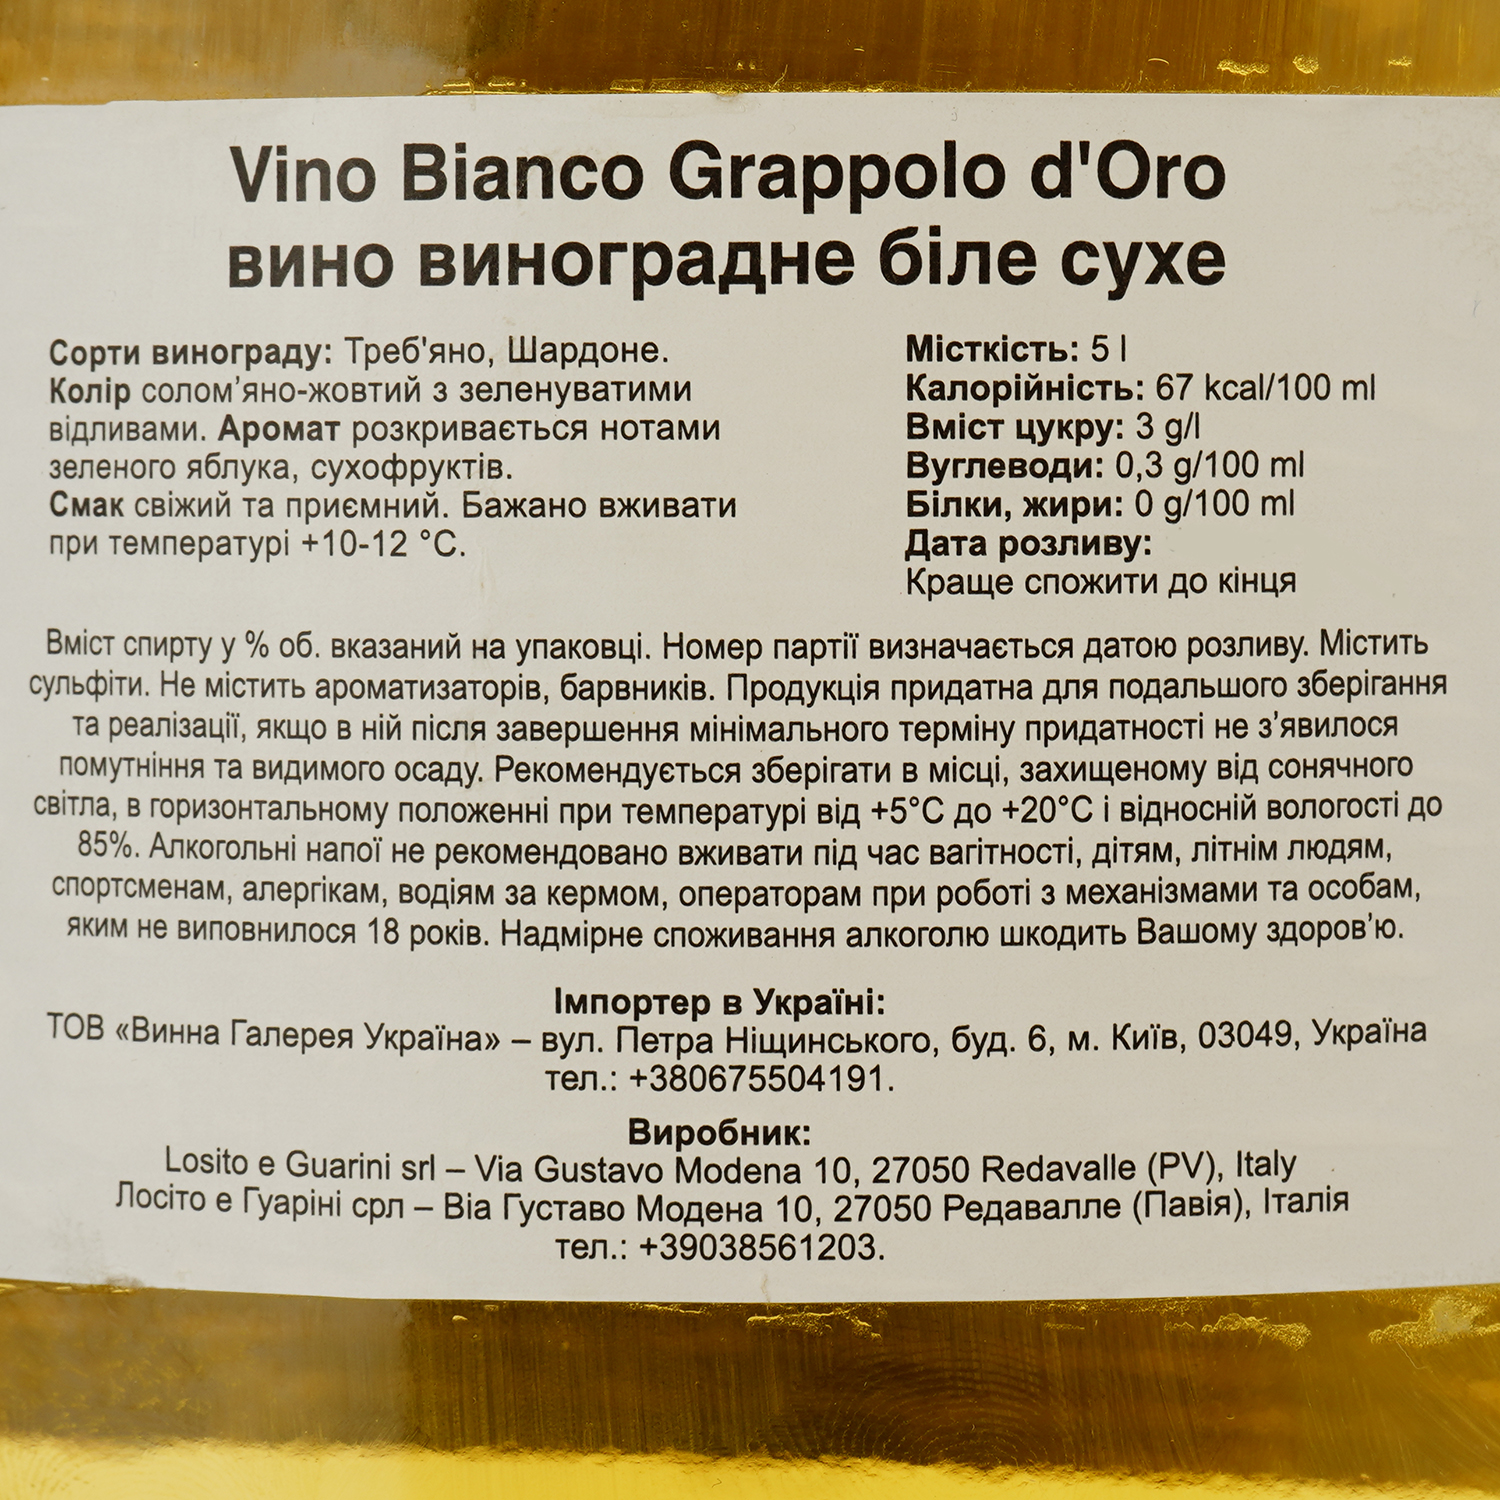 Вино Vino Bianco Grappolo d'Oro, біле, сухе, 5 л - фото 3